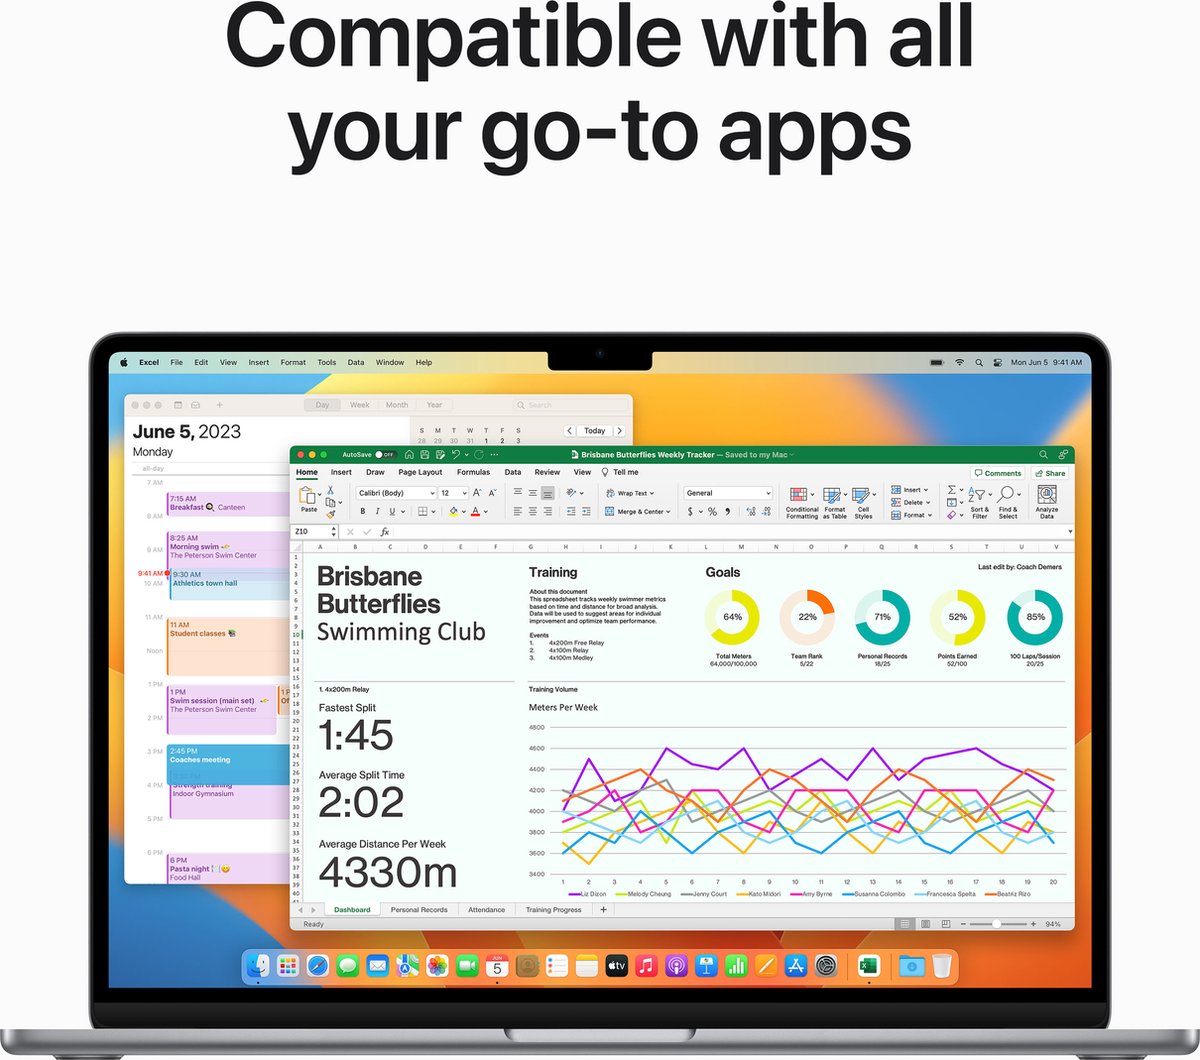 MacBook Air 15-inch M2 8-core CPU 10-core GPU 512GB 8GB - test-product-media-liquid1